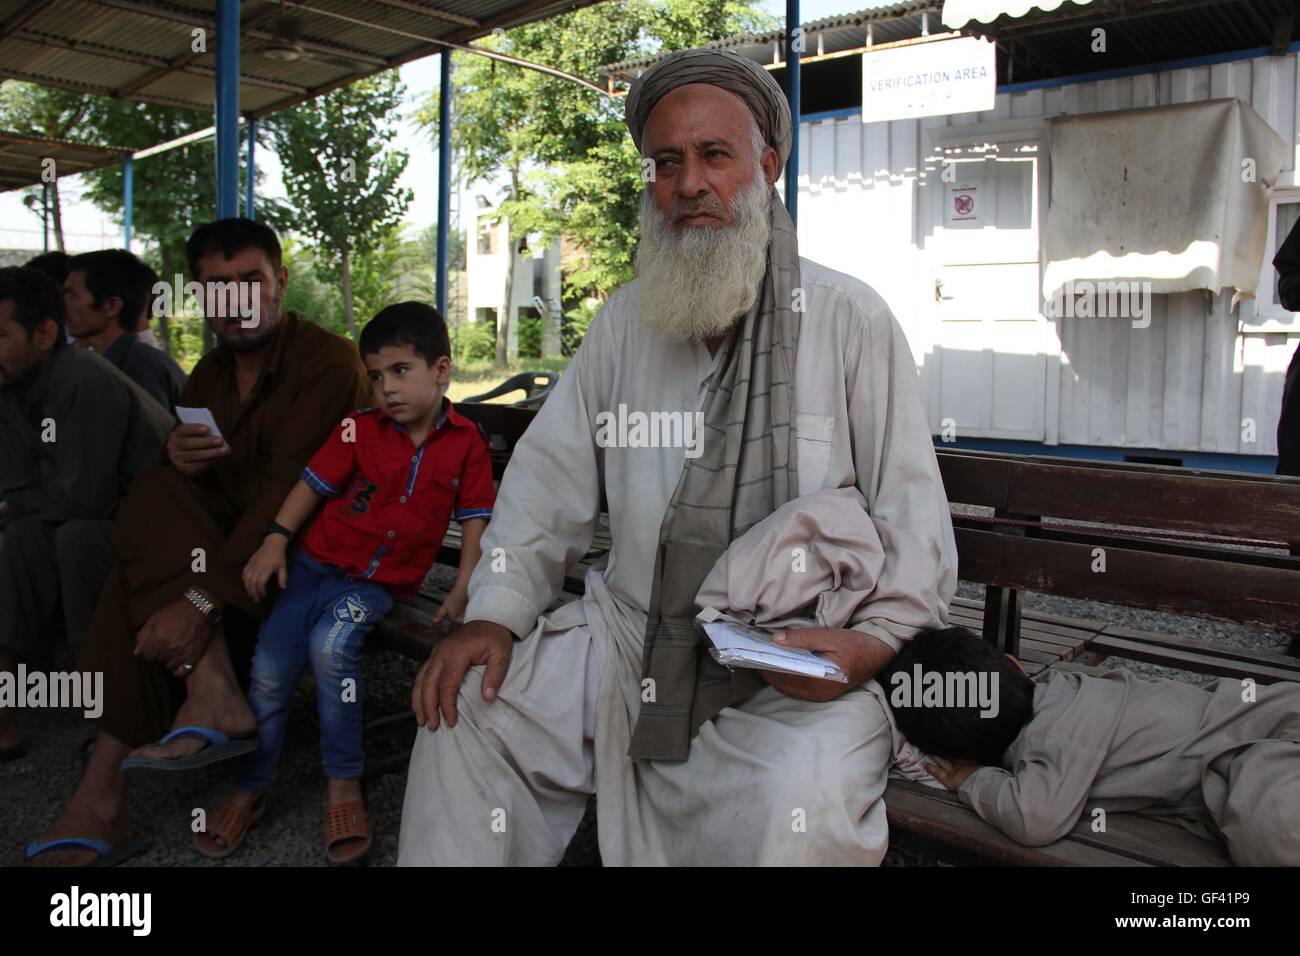 A Peshawar, Pakistan. Il 23 giugno, 2016. Habibur Rahman, un rifugiato dall' Afghanistan, si trova in una delle Nazioni Unite centro di ritorno nella città di Peshawar, Pakistan, 23 giugno 2016. Egli ha lasciato l'Afghanistan venticinque anni fa. Ora egli è tornato. Egli dice che negli ultimi mesi la sua famiglia era minacciata e che la polizia è venuto a premerli per denaro. Per decenni il Pakistan è stato la sede di una delle più grandi profugo afgano europee nel mondo: circa 1 milione e mezzo di iscritti e un numero stimato di milioni di rifugiati non registrati. Foto: Christine-Felice Roehrs/dpa/Alamy Live News Foto Stock